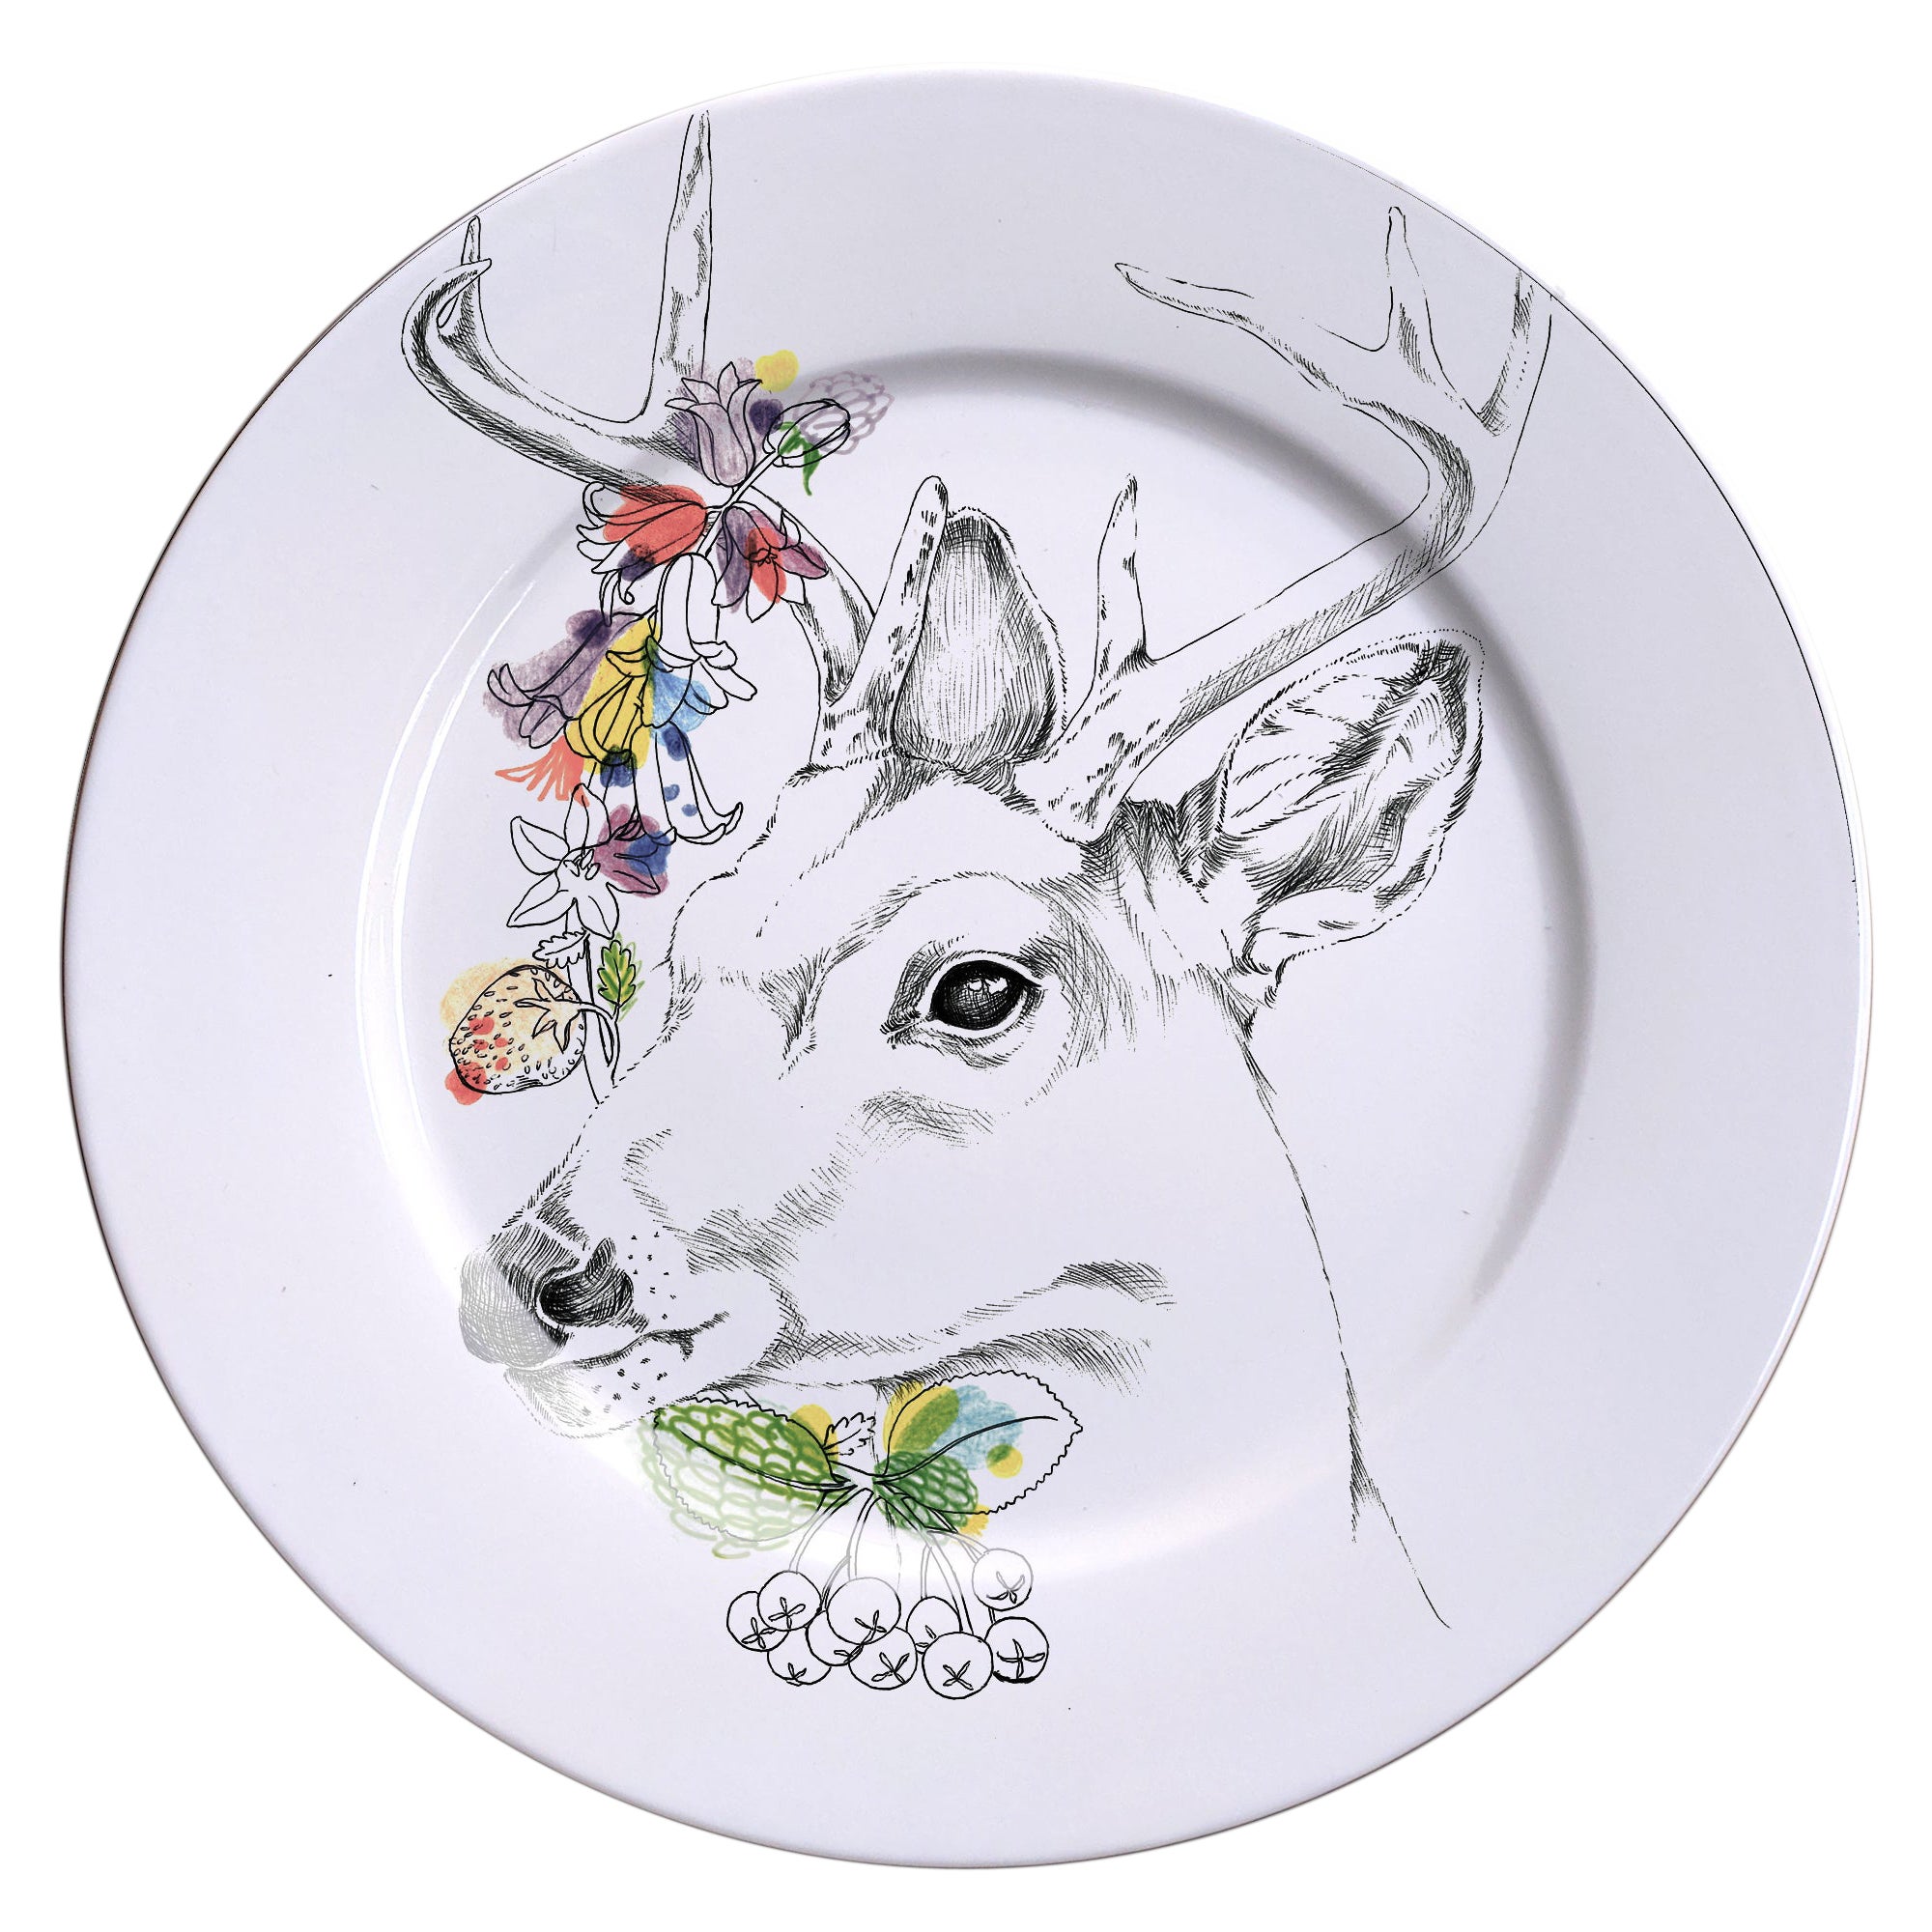 Assiette à dîner en porcelaine contemporaine Ode to the Woods avec cerfs et fleurs